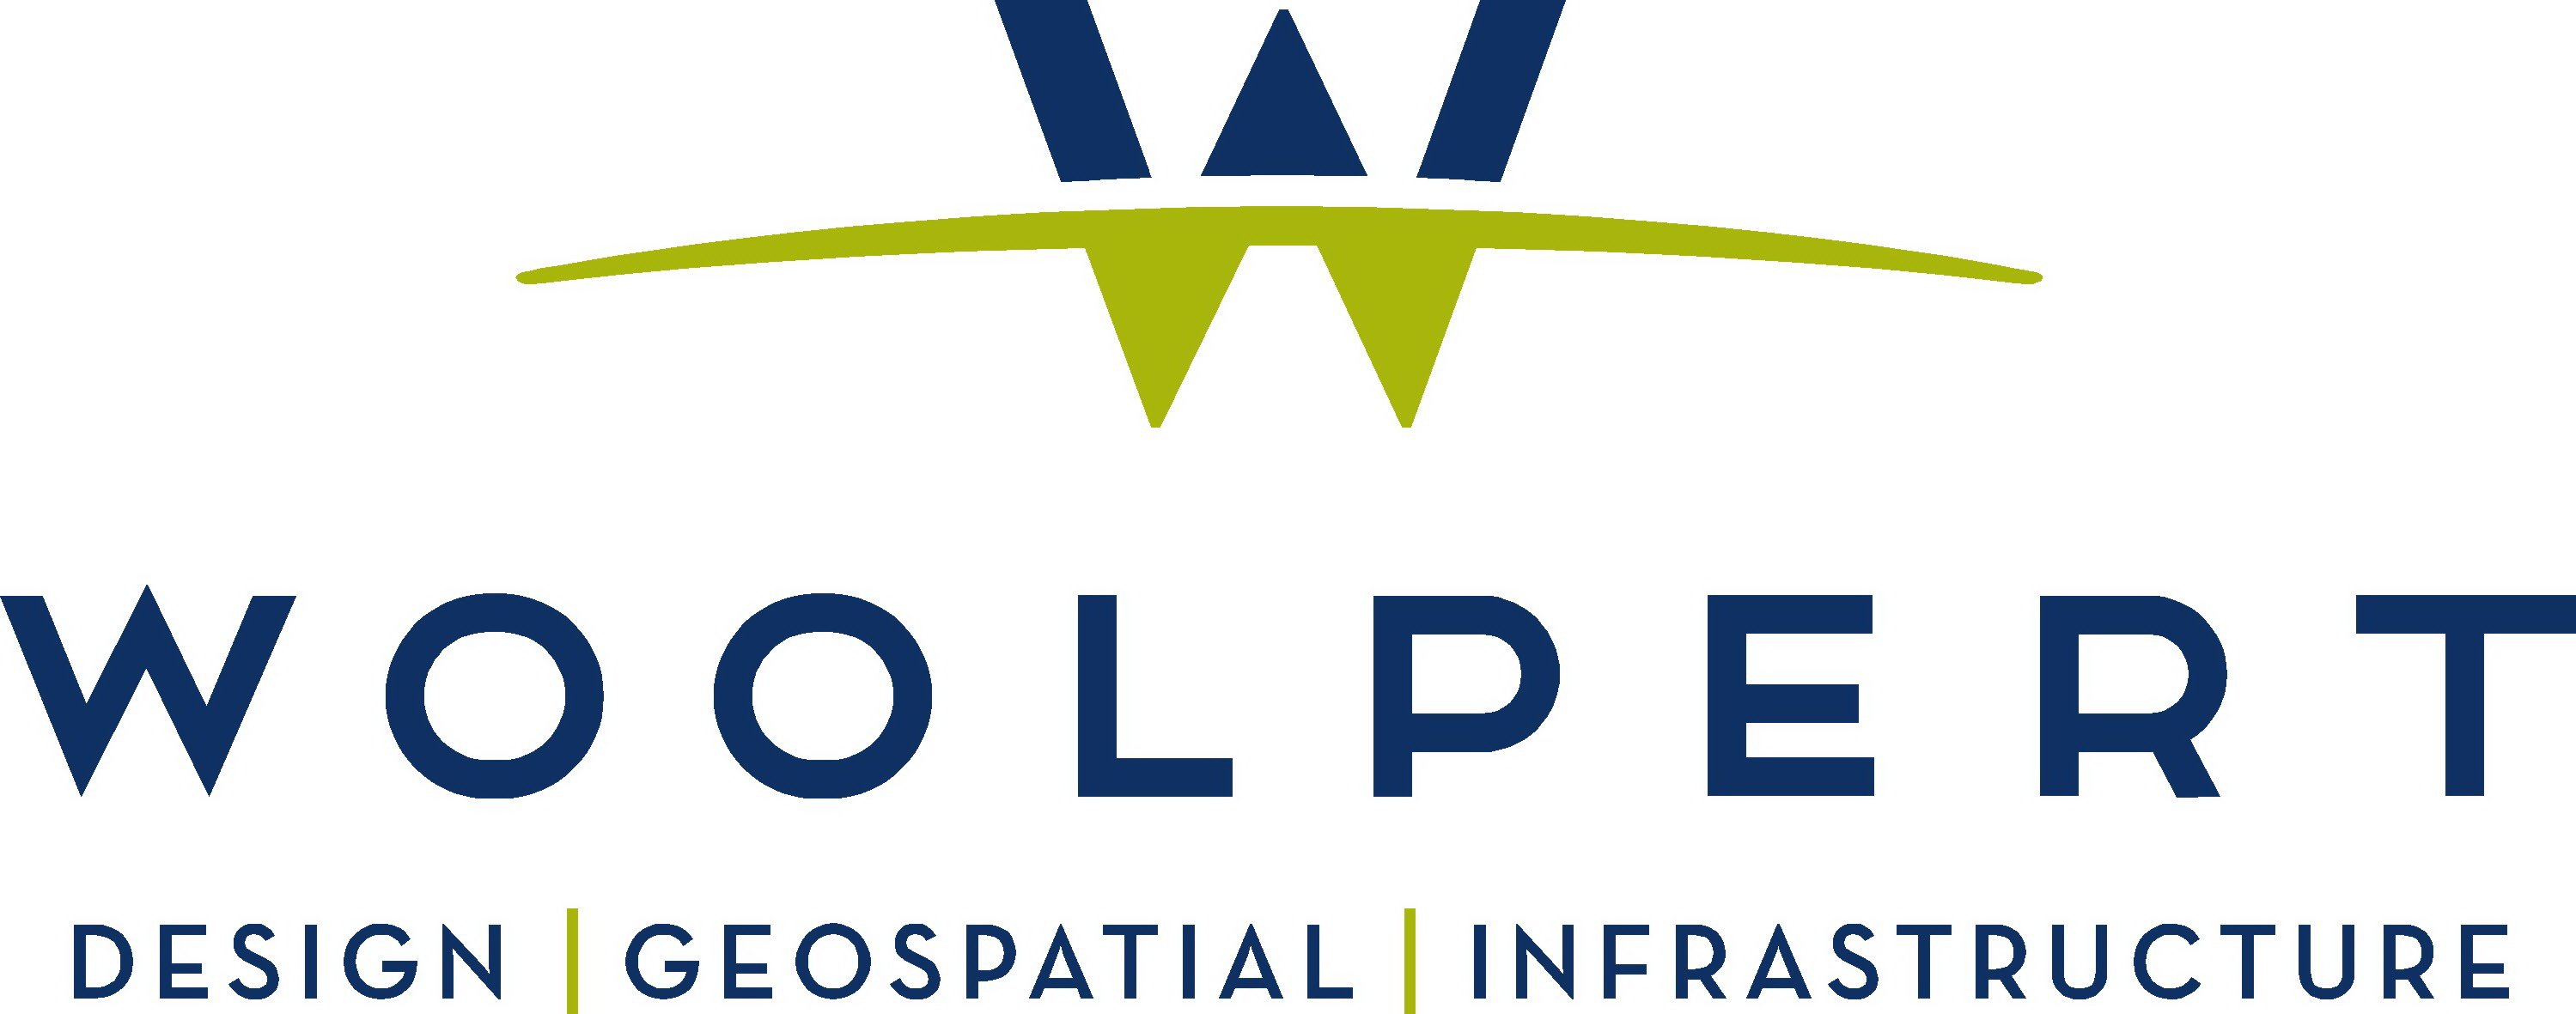 Woolpert-logo